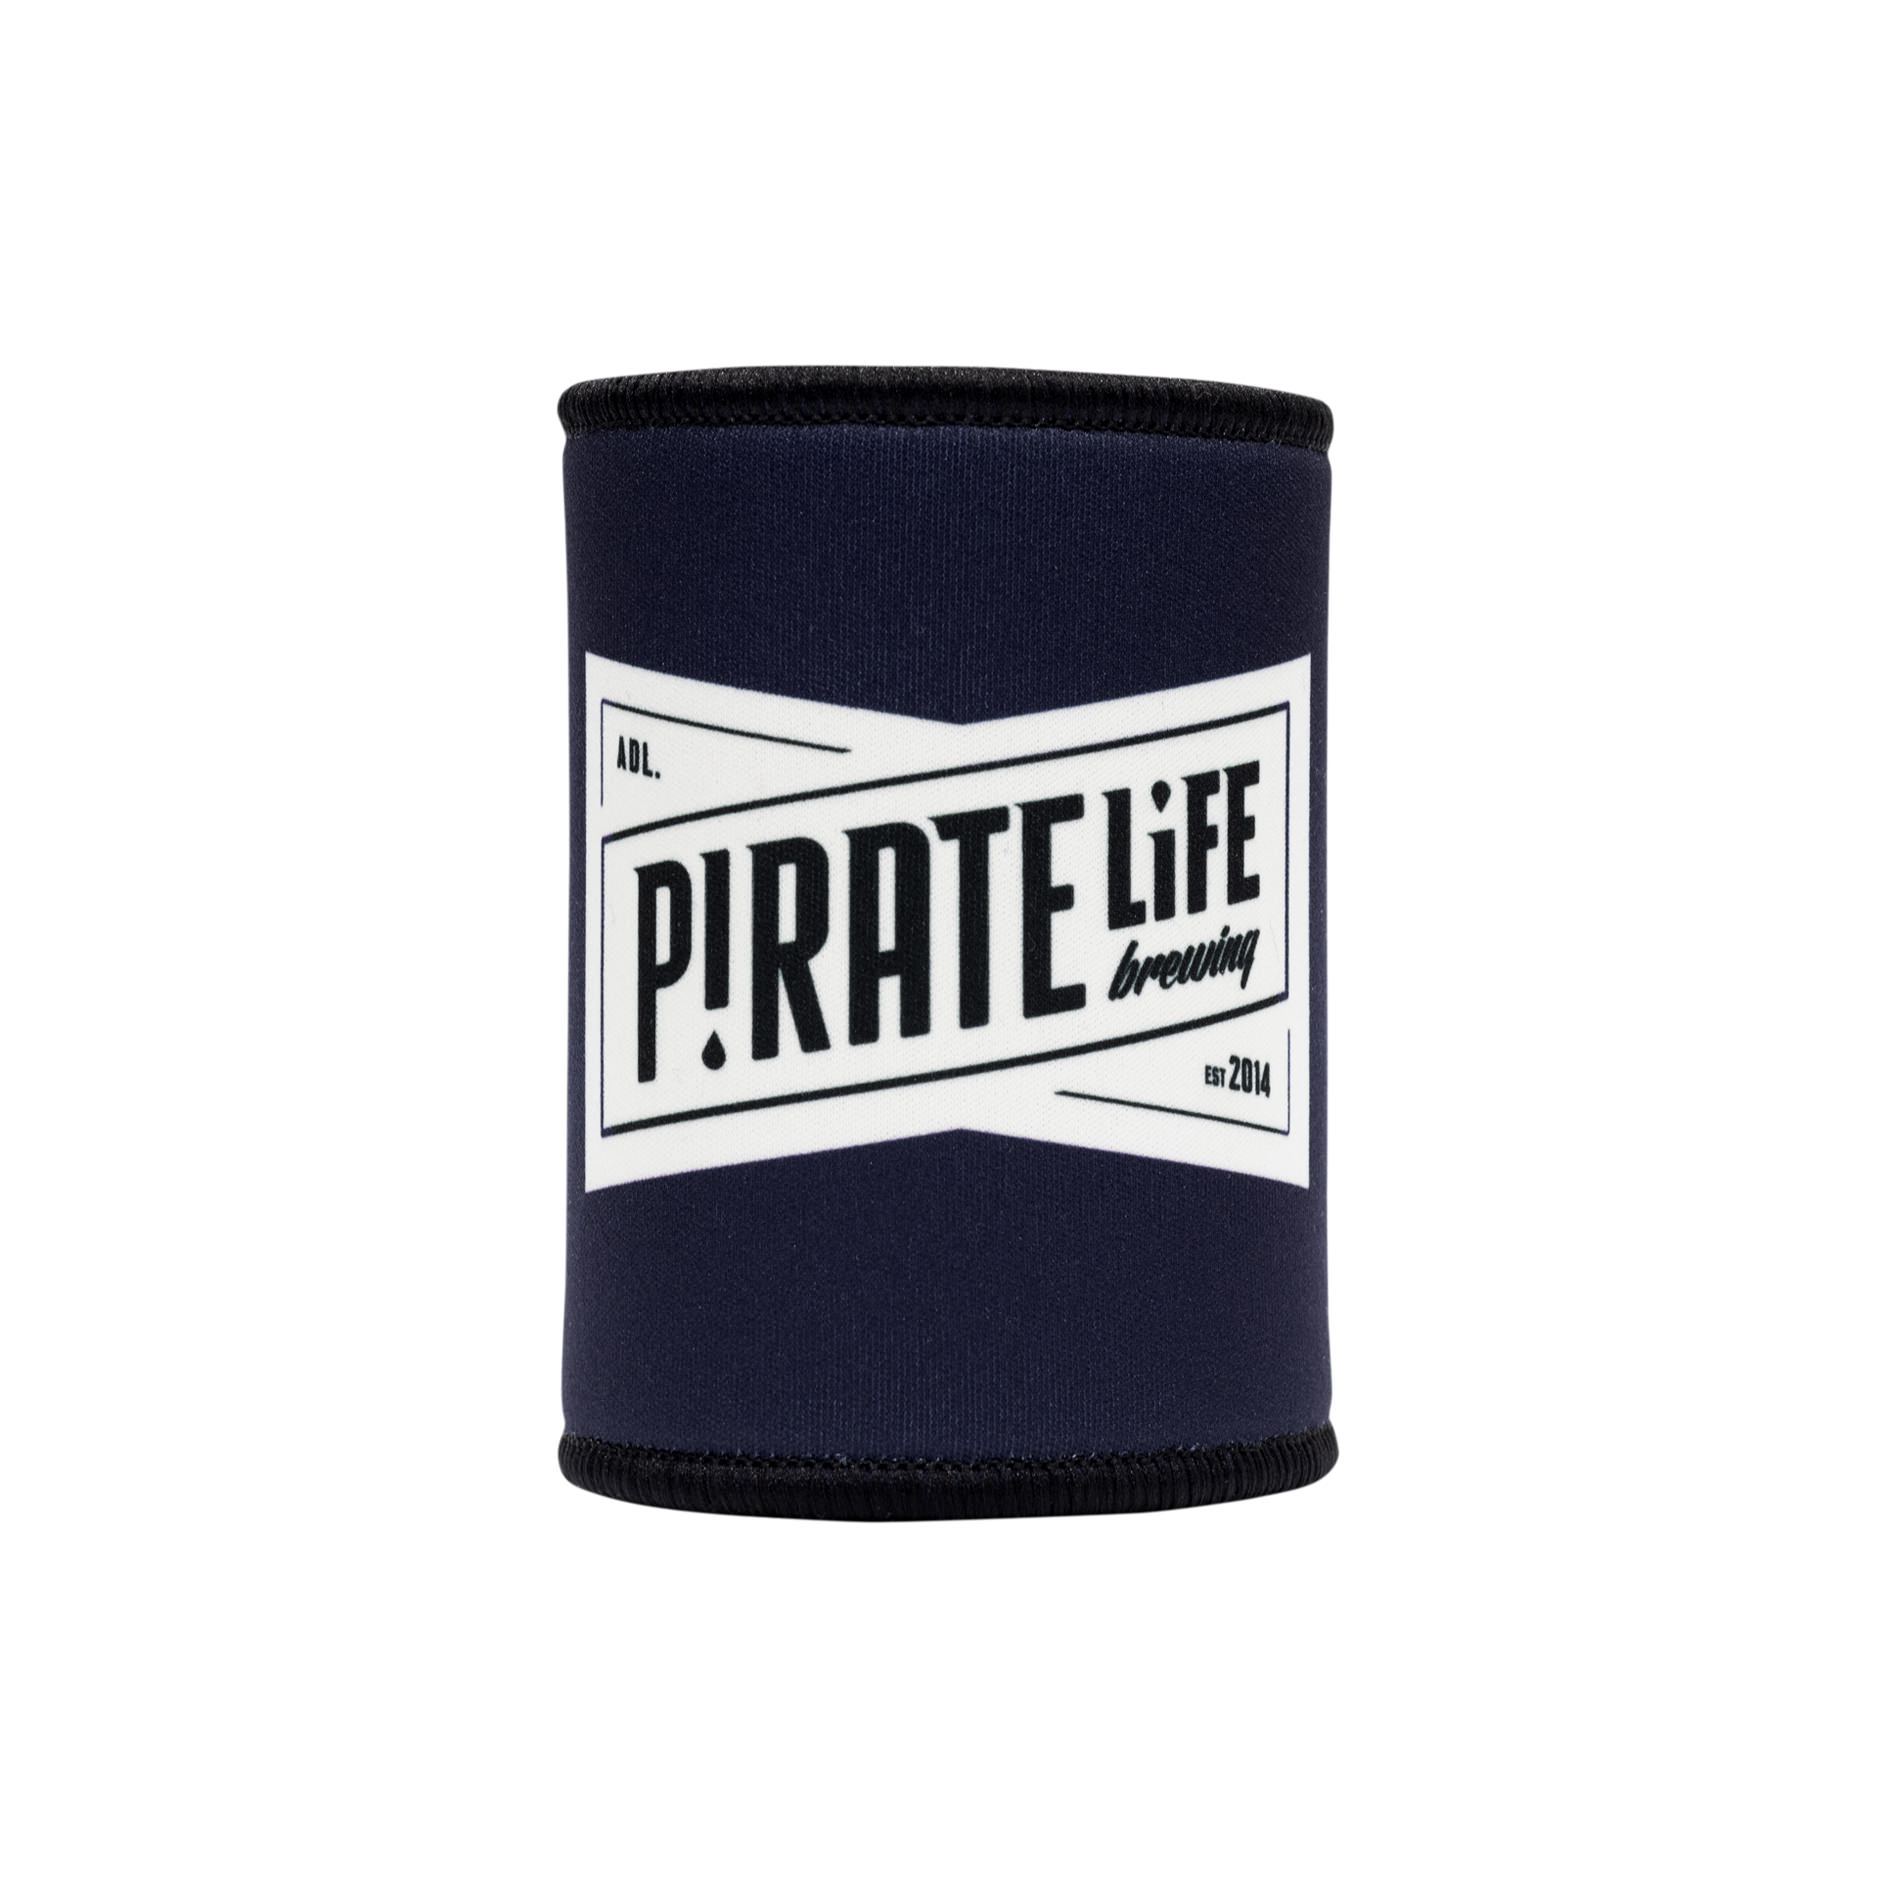 shop.piratelife.com.au